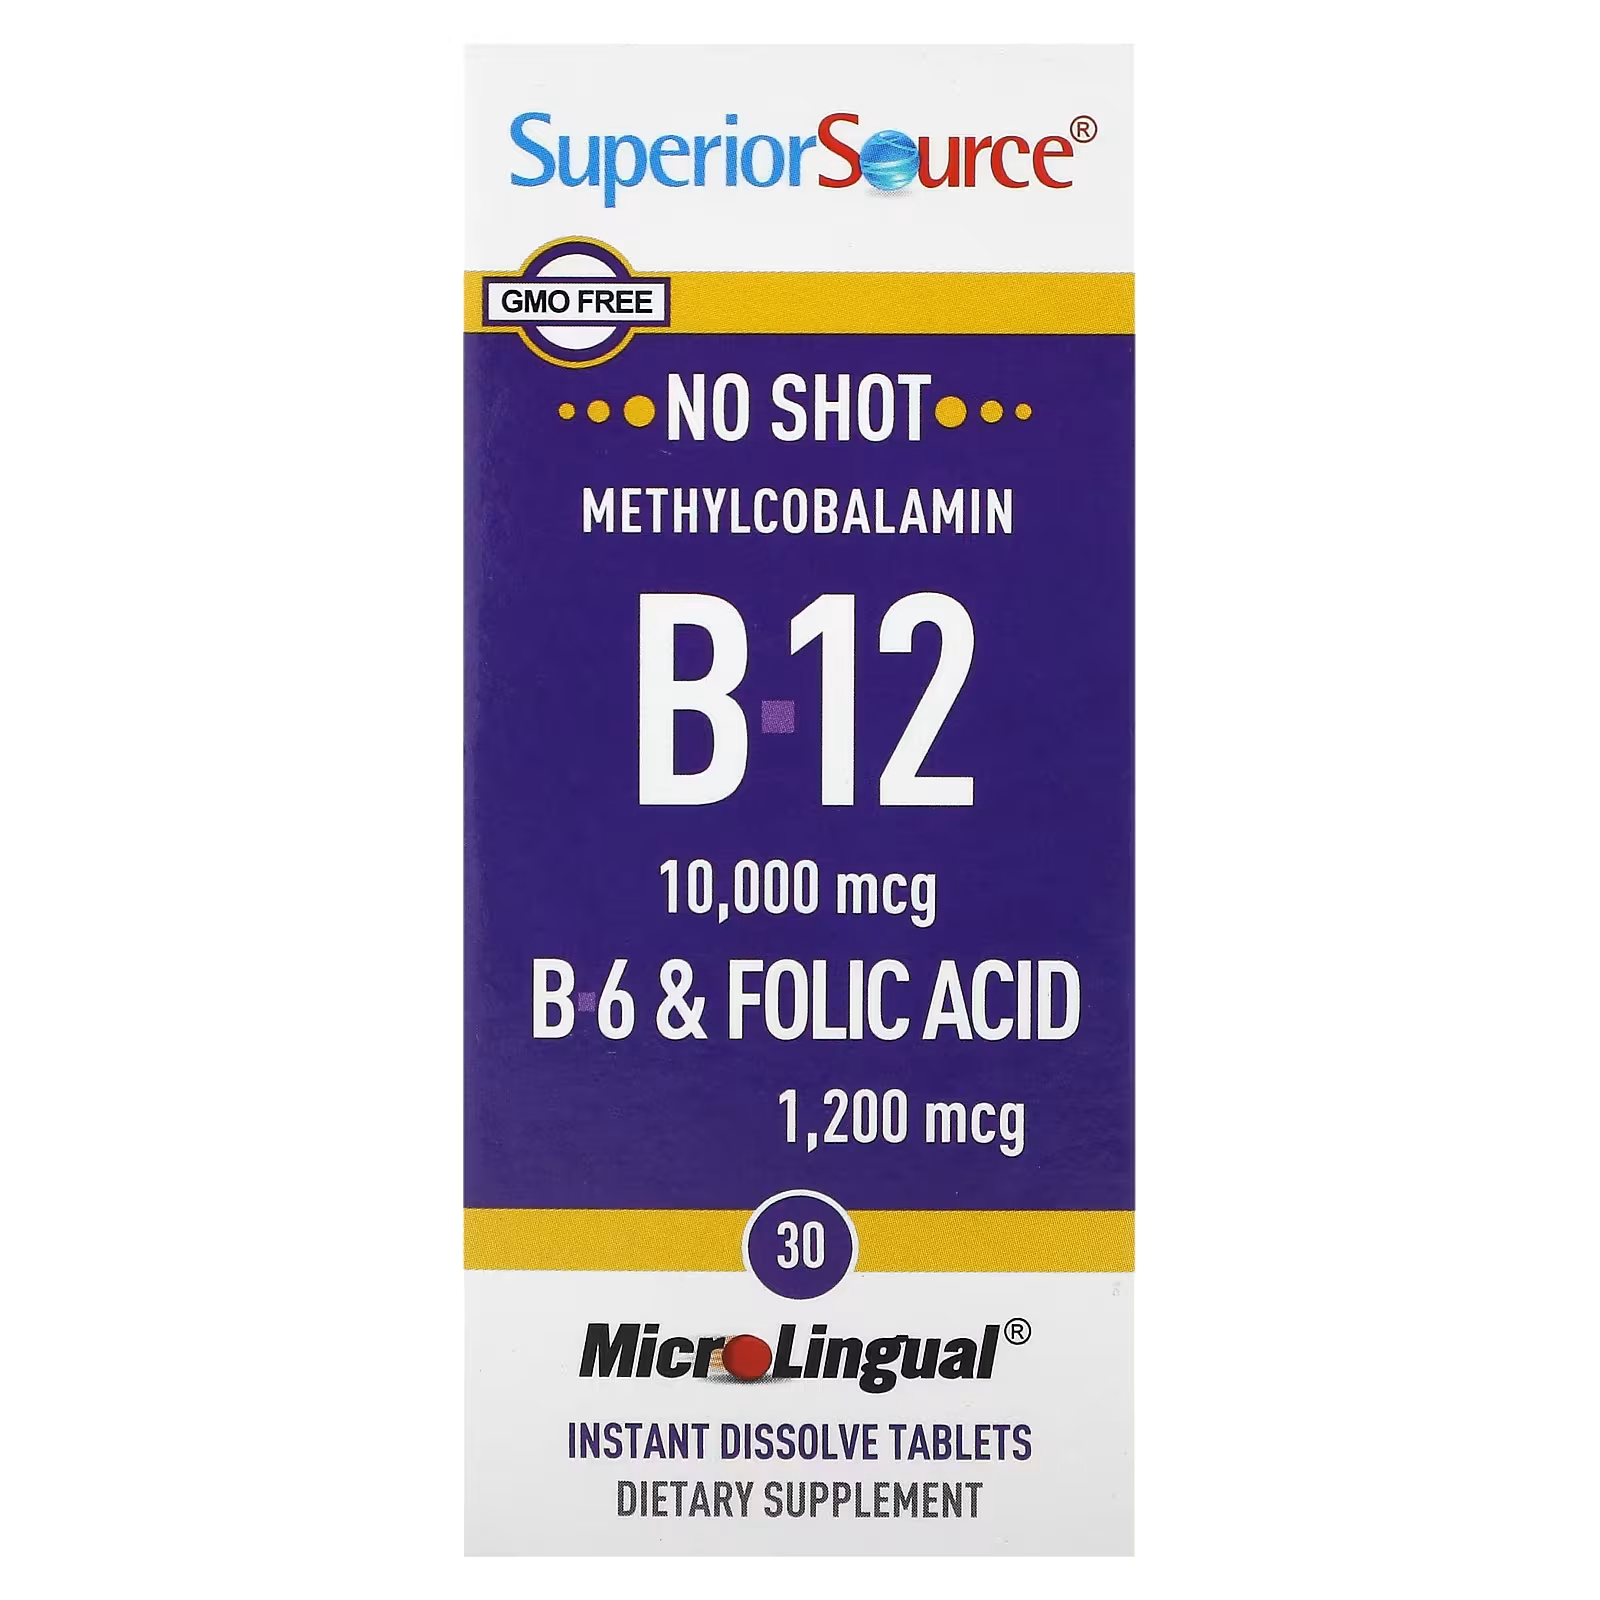 Метилкобаламин B-12 B-6 и фолиевая кислота MicroLingual Superior Source высшего качества, 30 растворяющихся таблеток superior source метилкобаламин b 12 1000 мкг b 6 и фолиевая кислота 800 мкг microlingual 60 таблеток